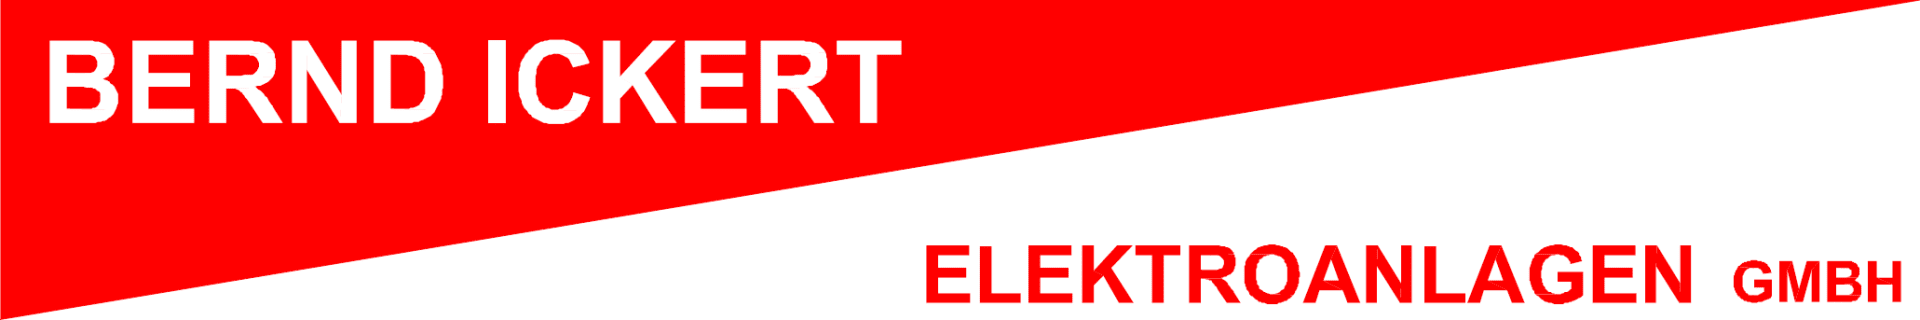 Bernd Ickert Elektroanlagen GmbH logo